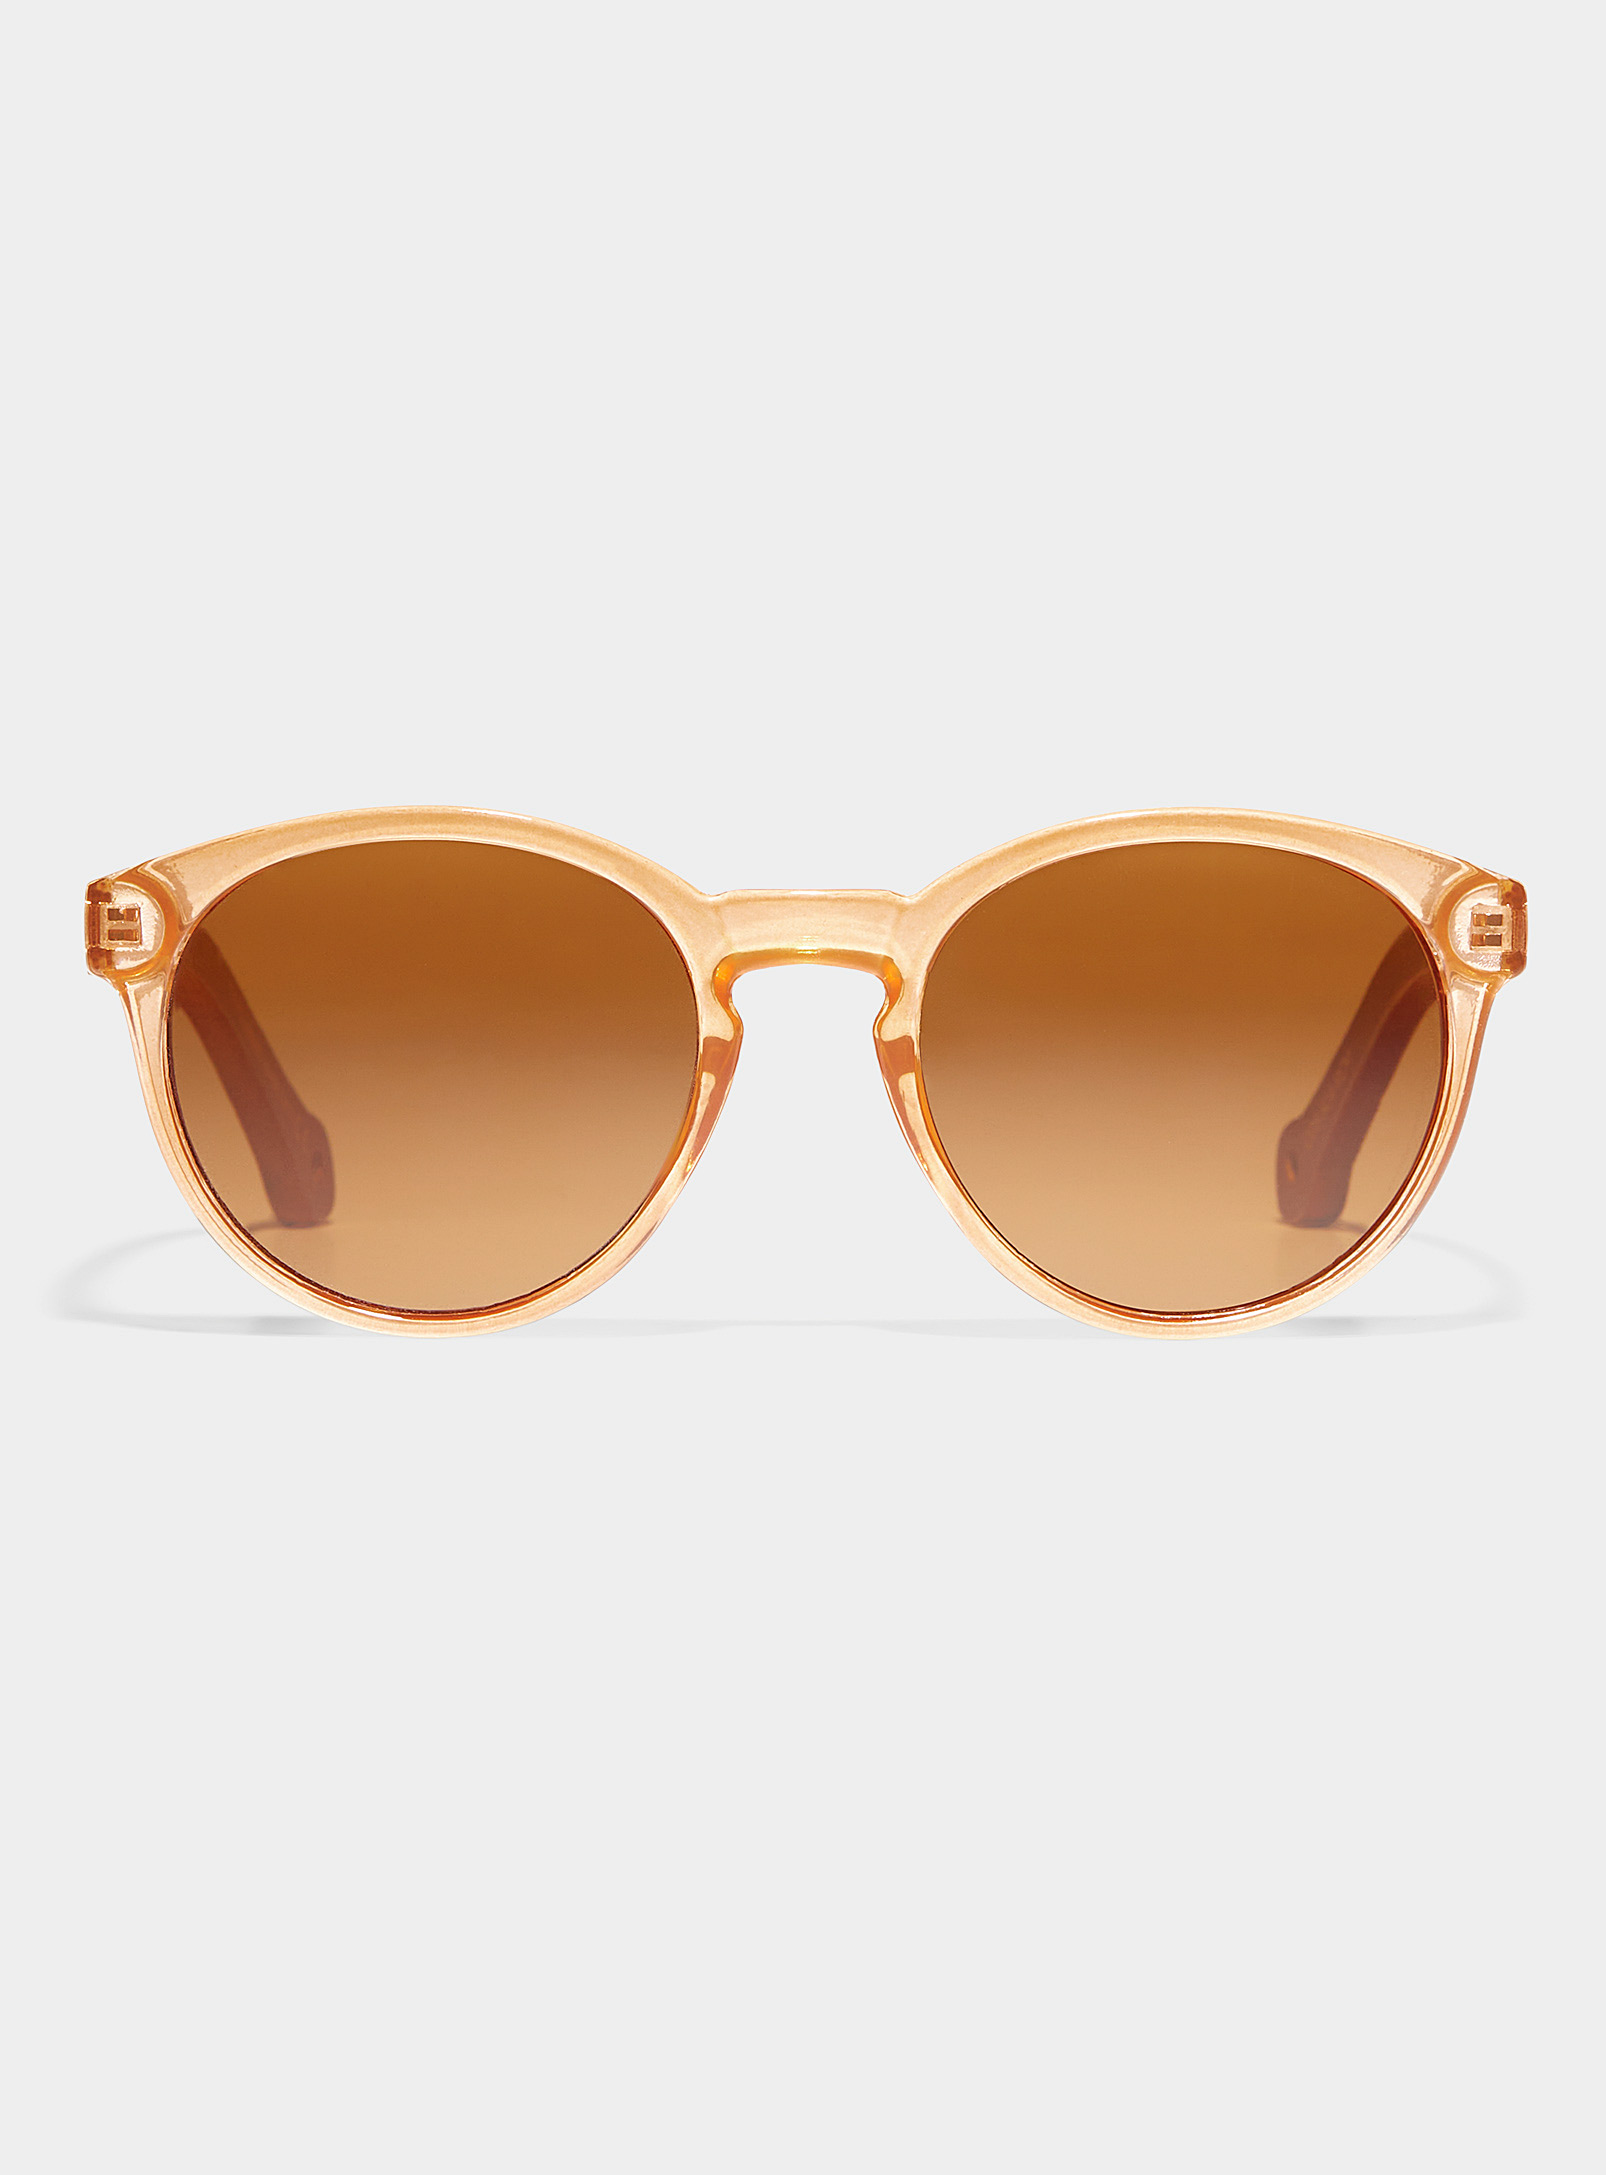 Parafina Costa Round Sunglasses In Brown